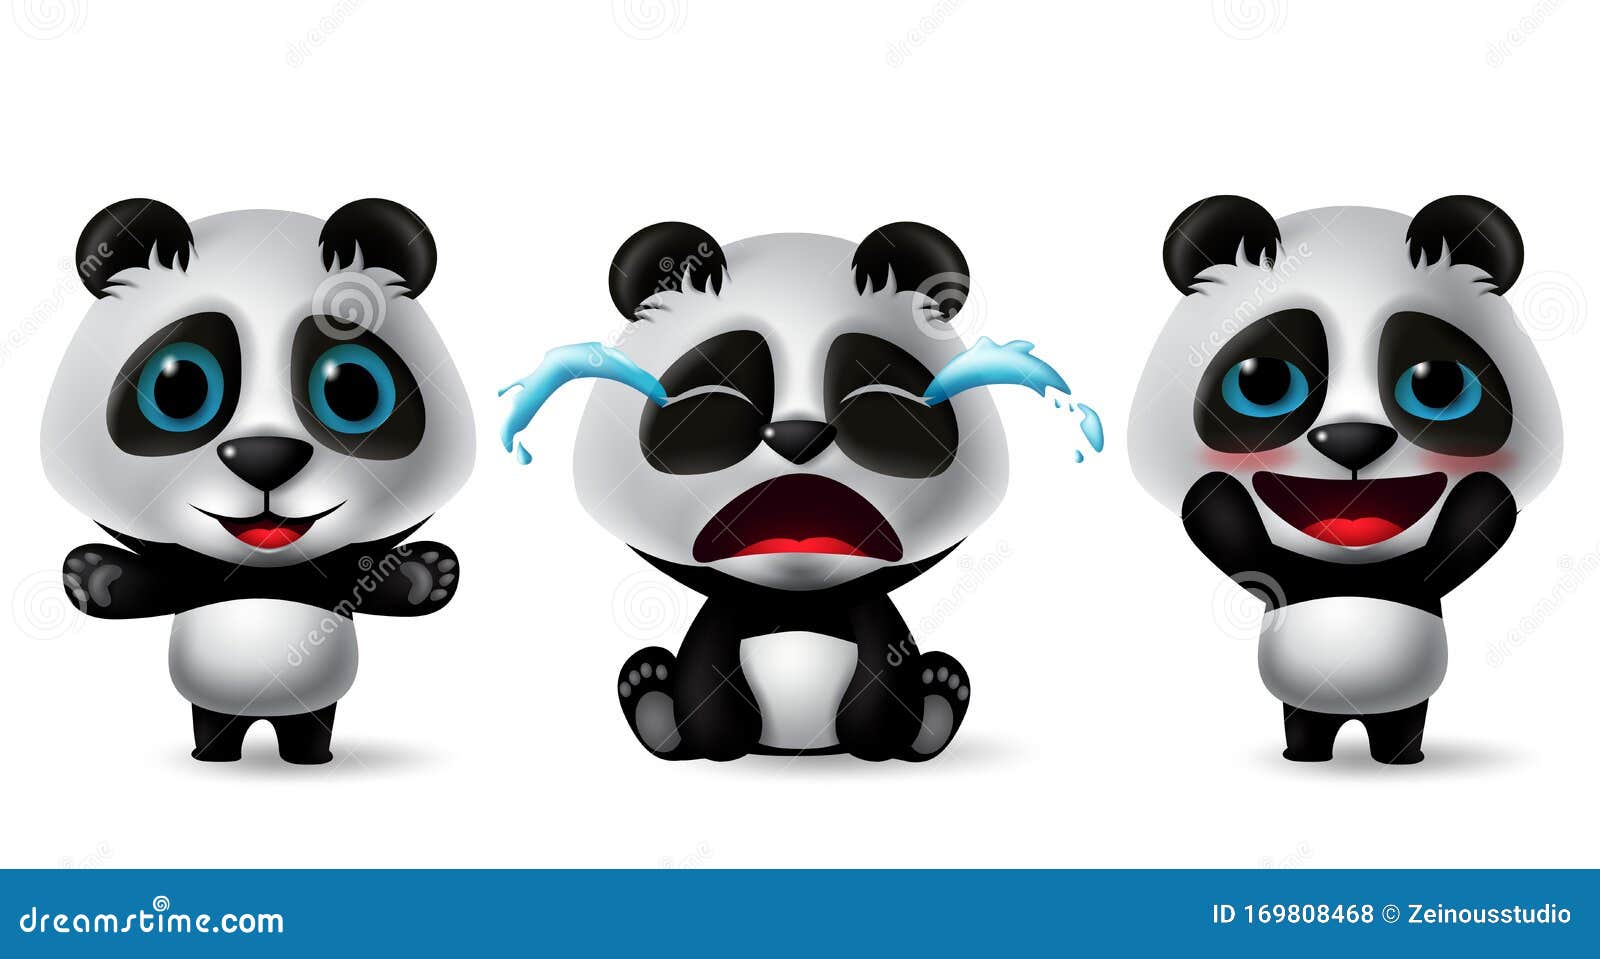 可爱的熊猫指着哭笑 向量例证. 插画 包括有 敲打, 笑声, 查出, 潜水艇, 情感, 荒地, 向量, 哭泣 - 197562702